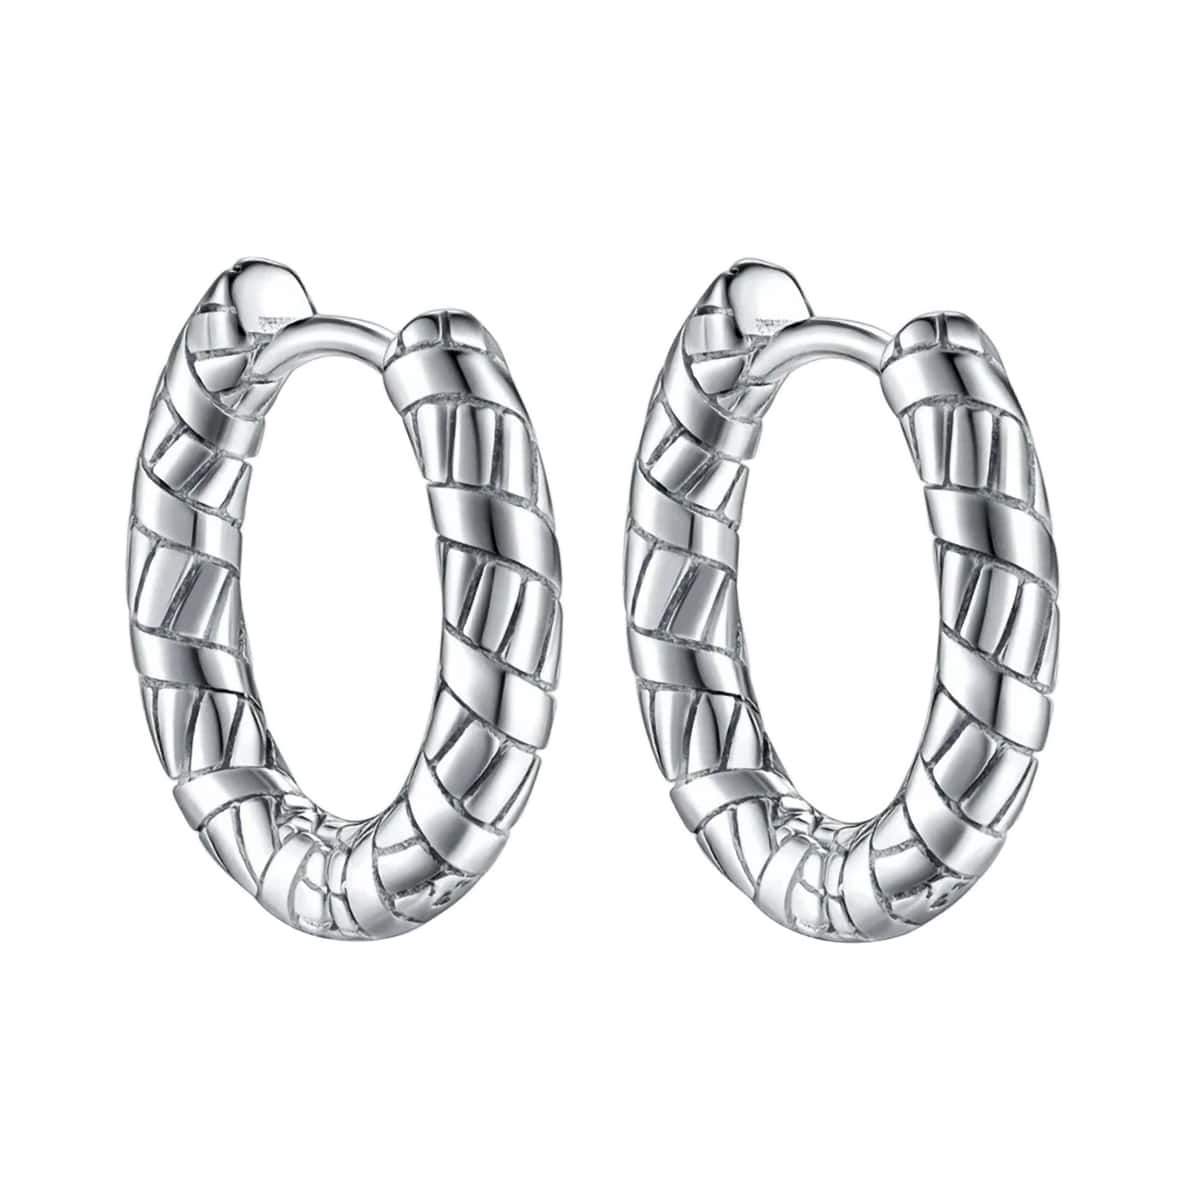 Patterned earrings steel ring earrings 3mm 12mm